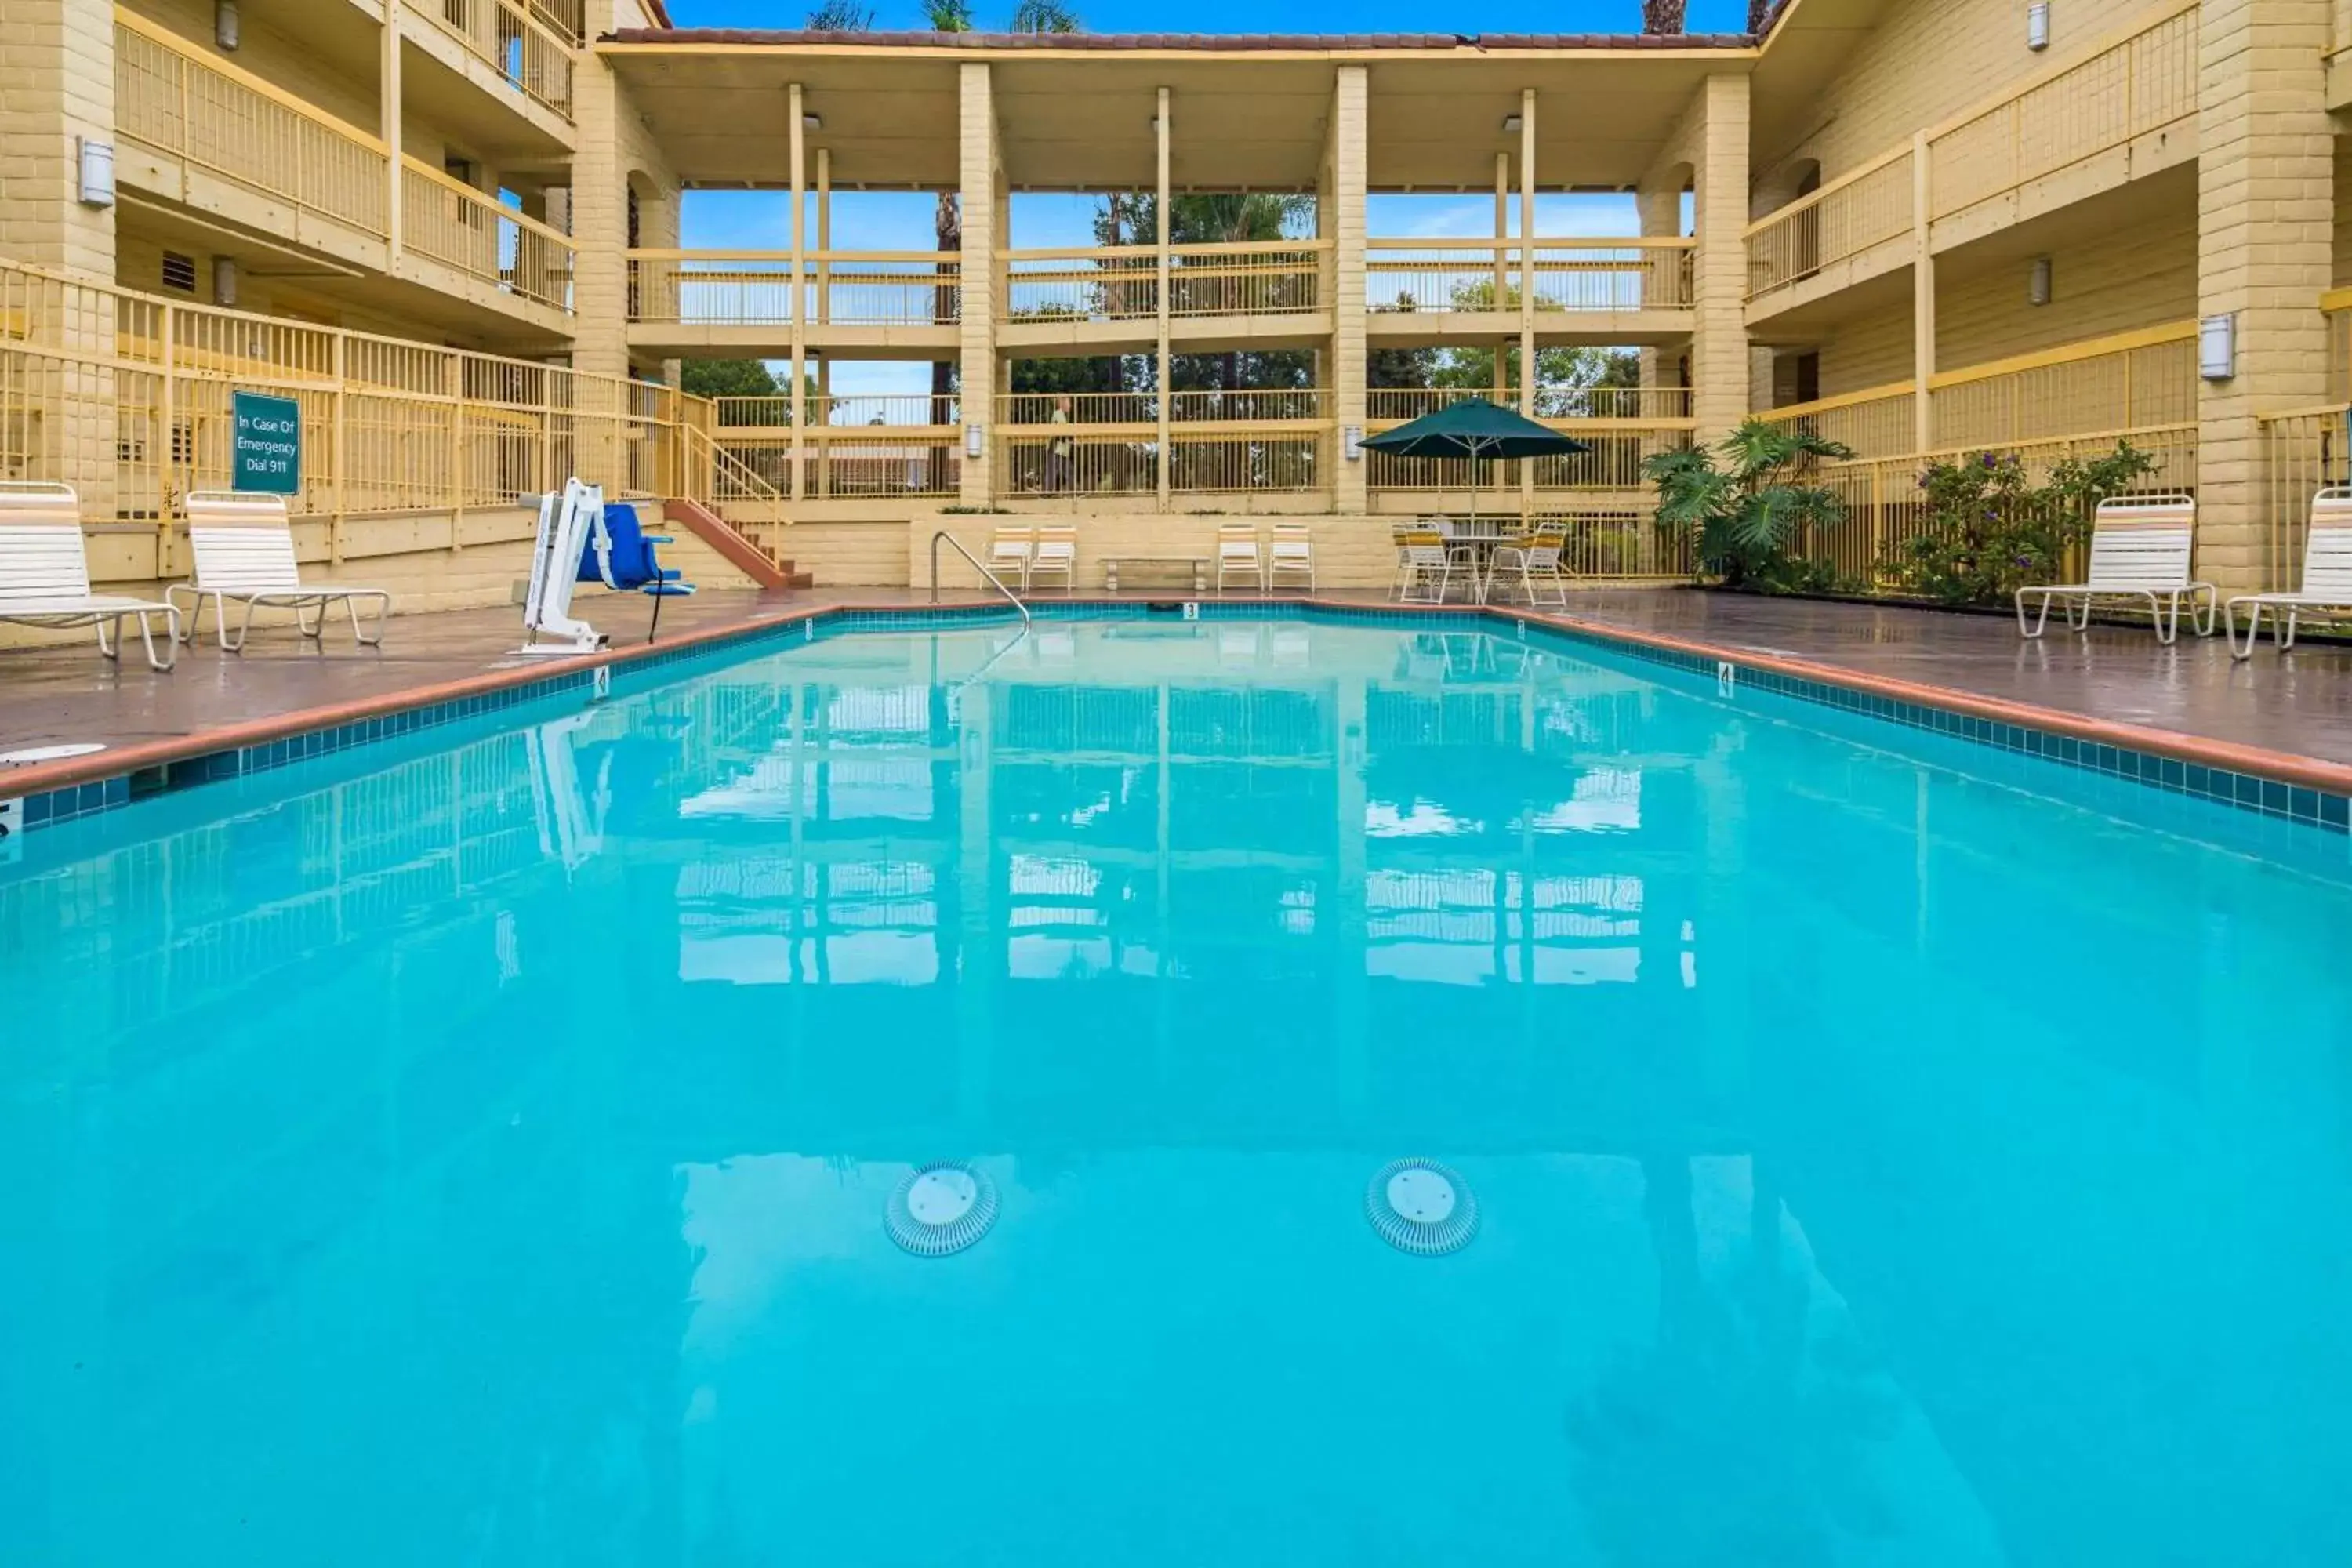 On site, Swimming Pool in La Quinta Inn by Wyndham San Diego Vista